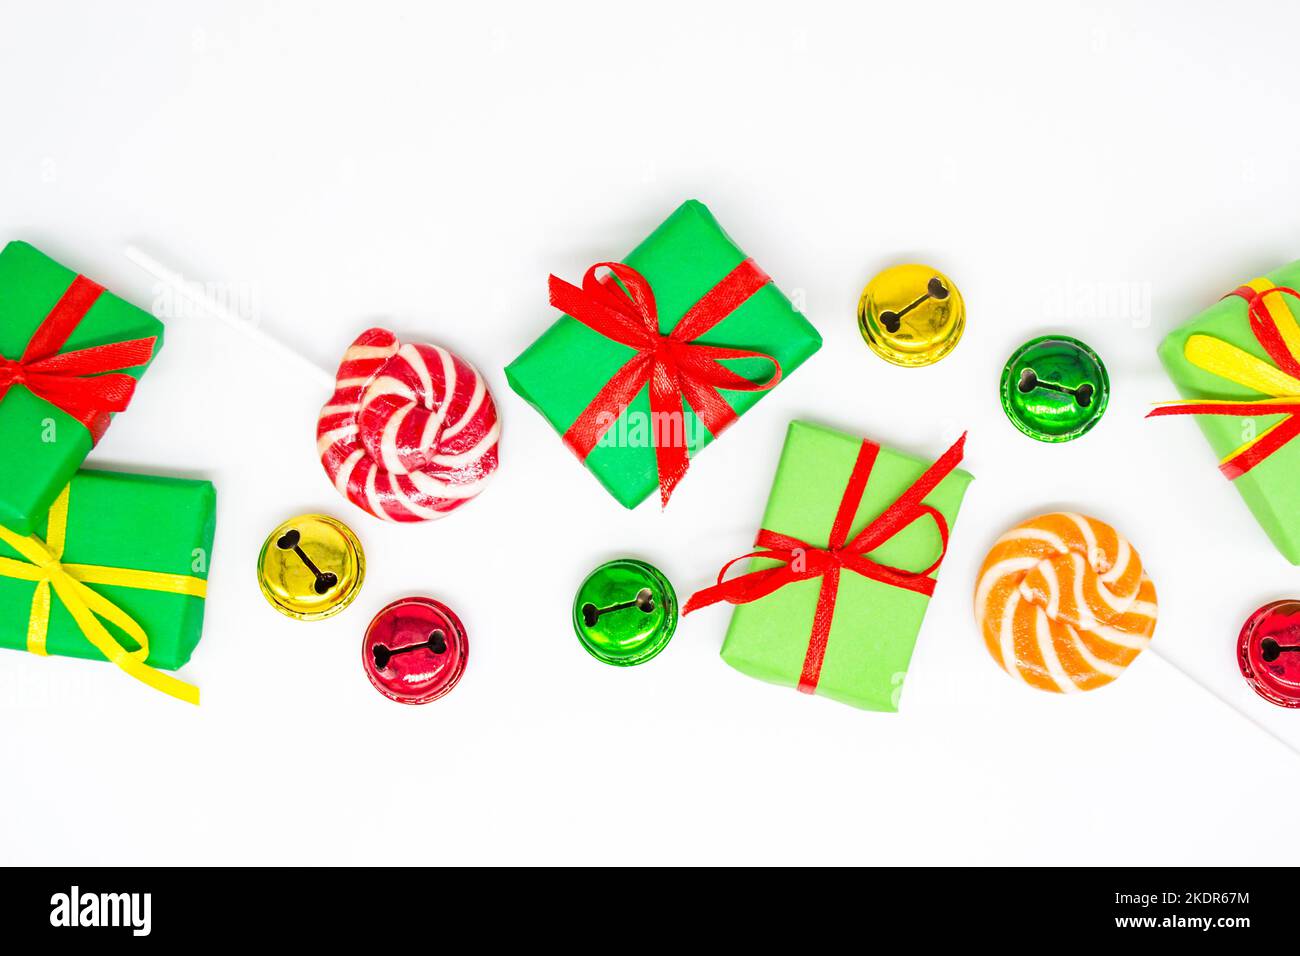 Buone feste: Regali con lollipop e campane rosse, verdi, dorate su sfondo bianco, spazio copia. Il concetto di Natale, le vendite, le feste dei bambini Foto Stock